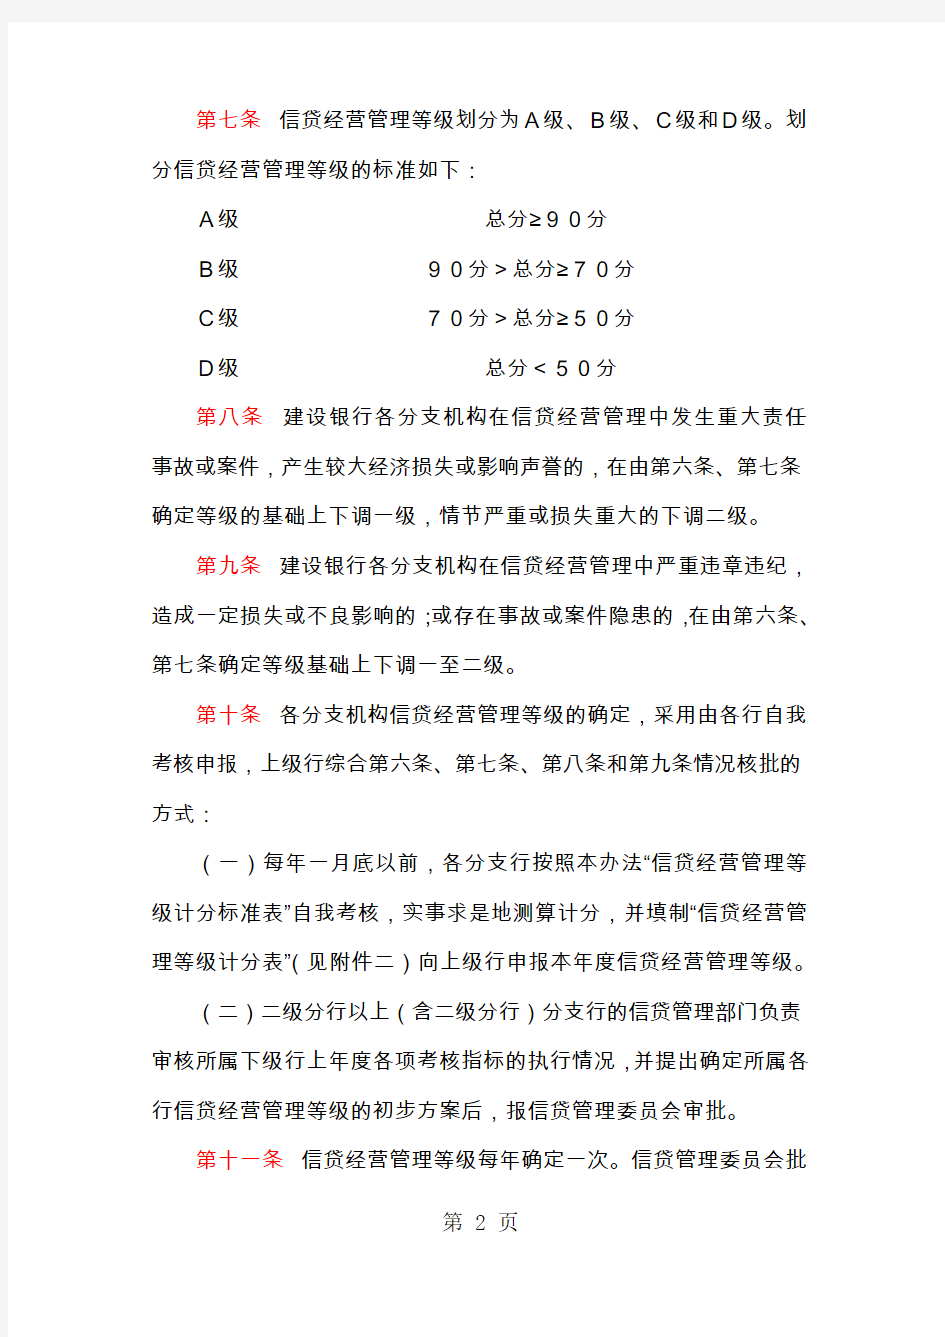 中国建设银行信贷授权管理办法共9页文档